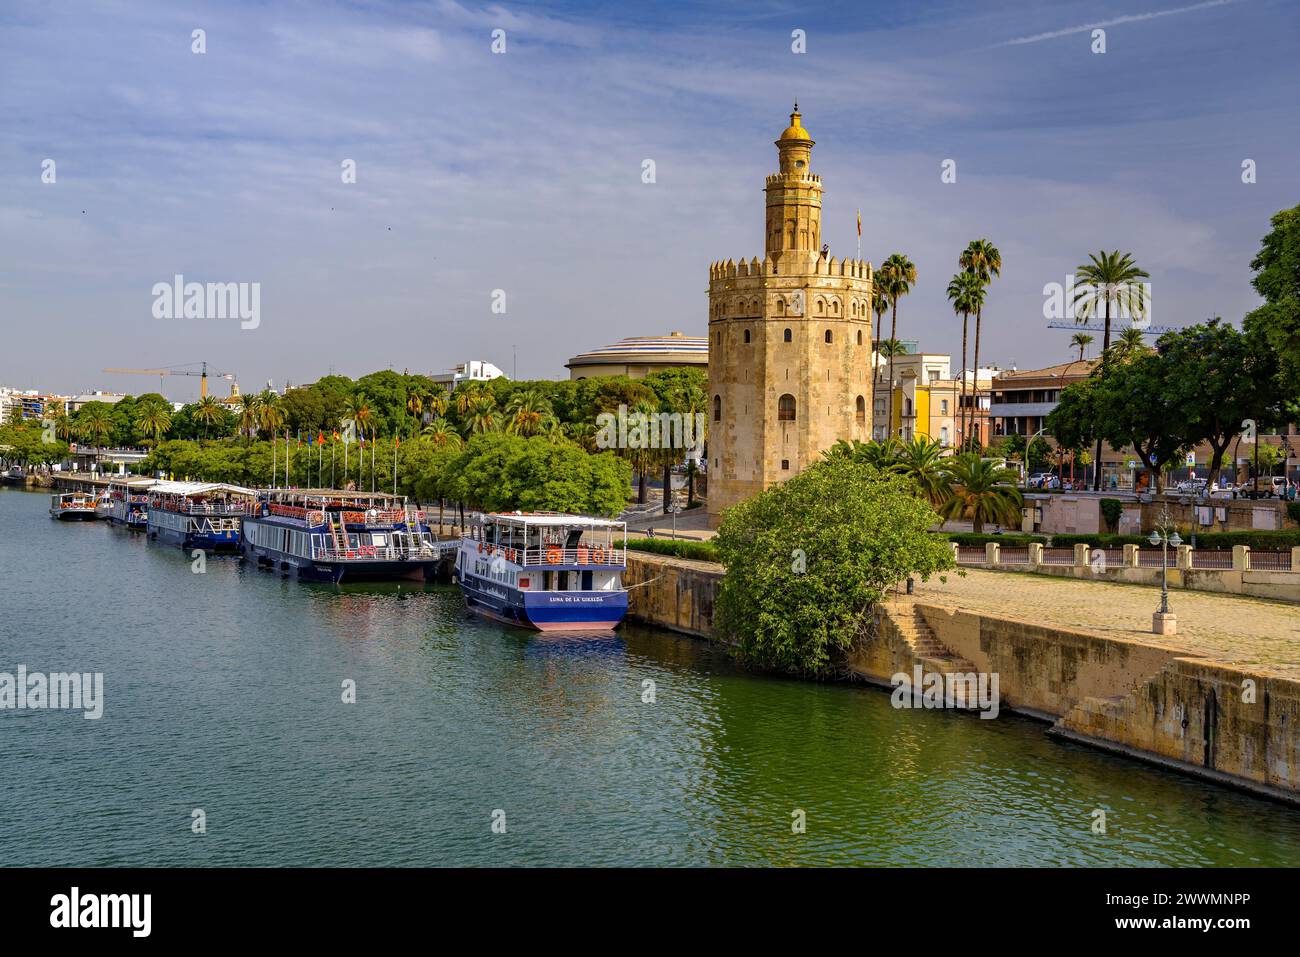 Traditioneller Blick auf Sevilla mit dem Torre del Oro und dem Fluss Guadalquivir mit einigen Booten (Sevilla, Andalusien, Spanien) Stockfoto